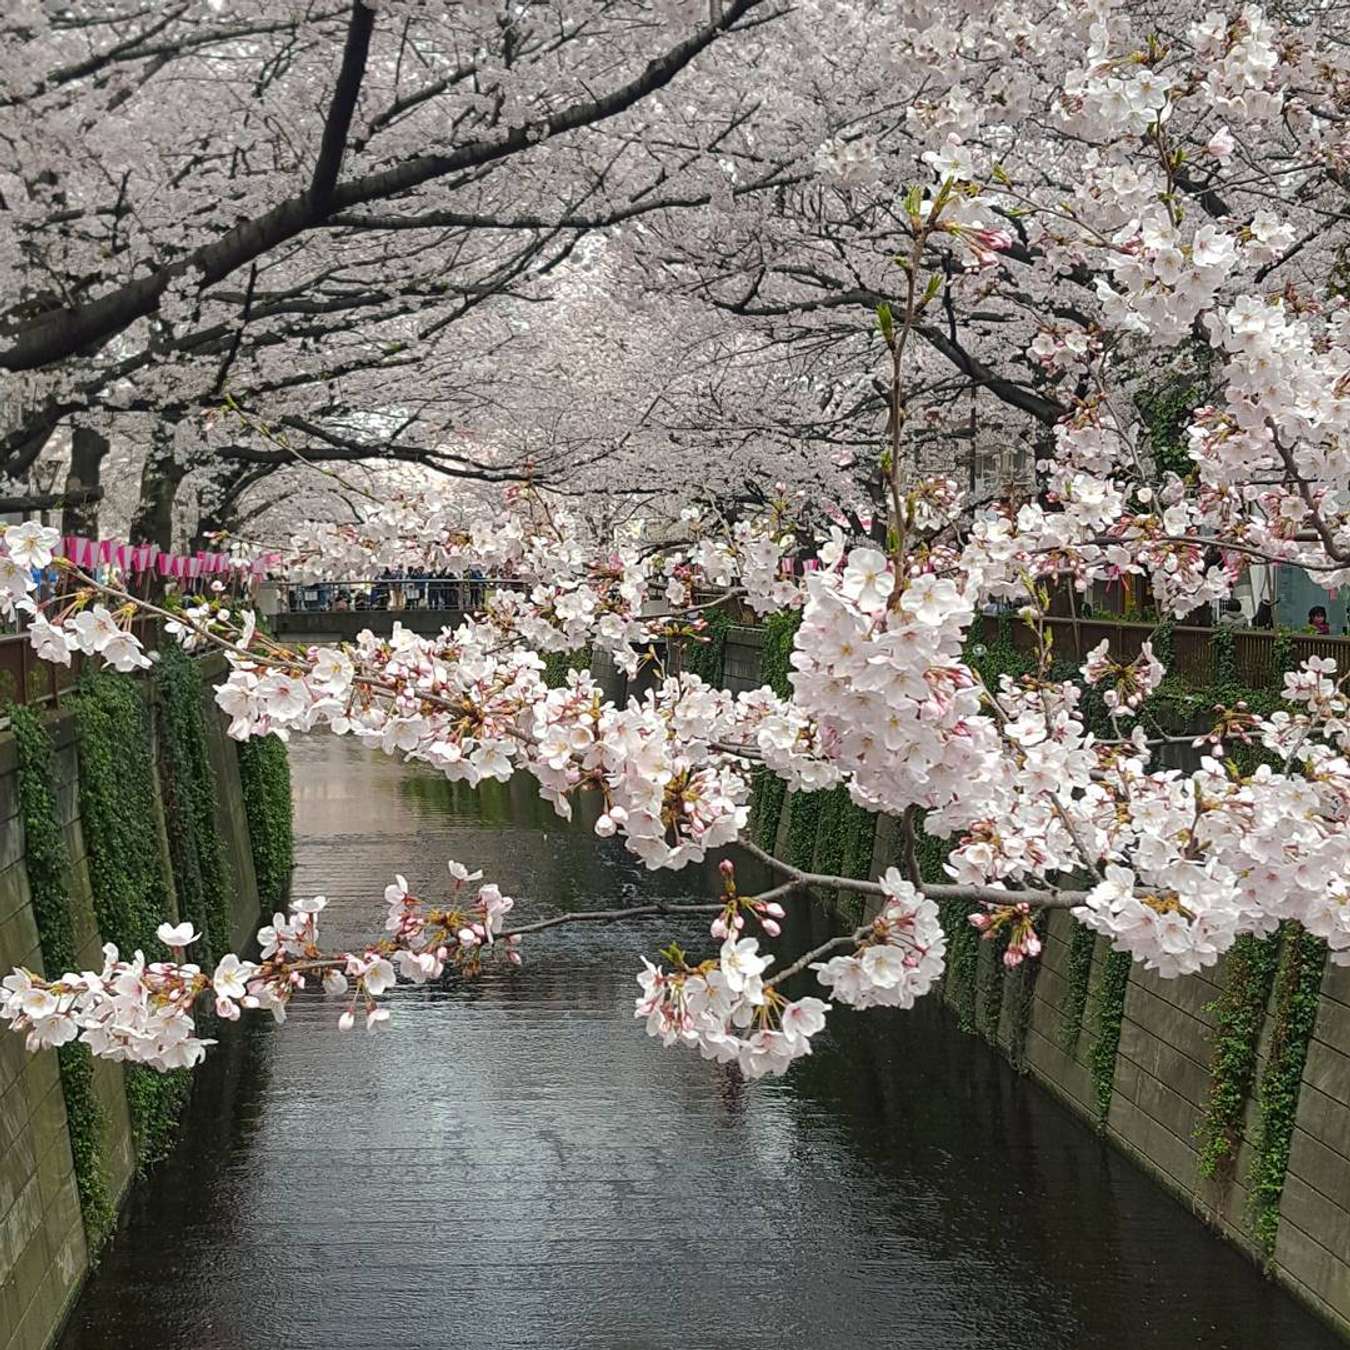 Địa điểm ngắm hoa anh đào Nhật Bản là điểm đến hấp dẫn cho các tín đồ yêu hoa trên toàn thế giới. Nếu bạn đang lên kế hoạch cho một chuyến du lịch đến Nhật Bản, đừng quên ghé qua các địa điểm ngắm hoa anh đào tuyệt đẹp. Hãy xem ngay từ khóa này để tìm hiểu thêm!